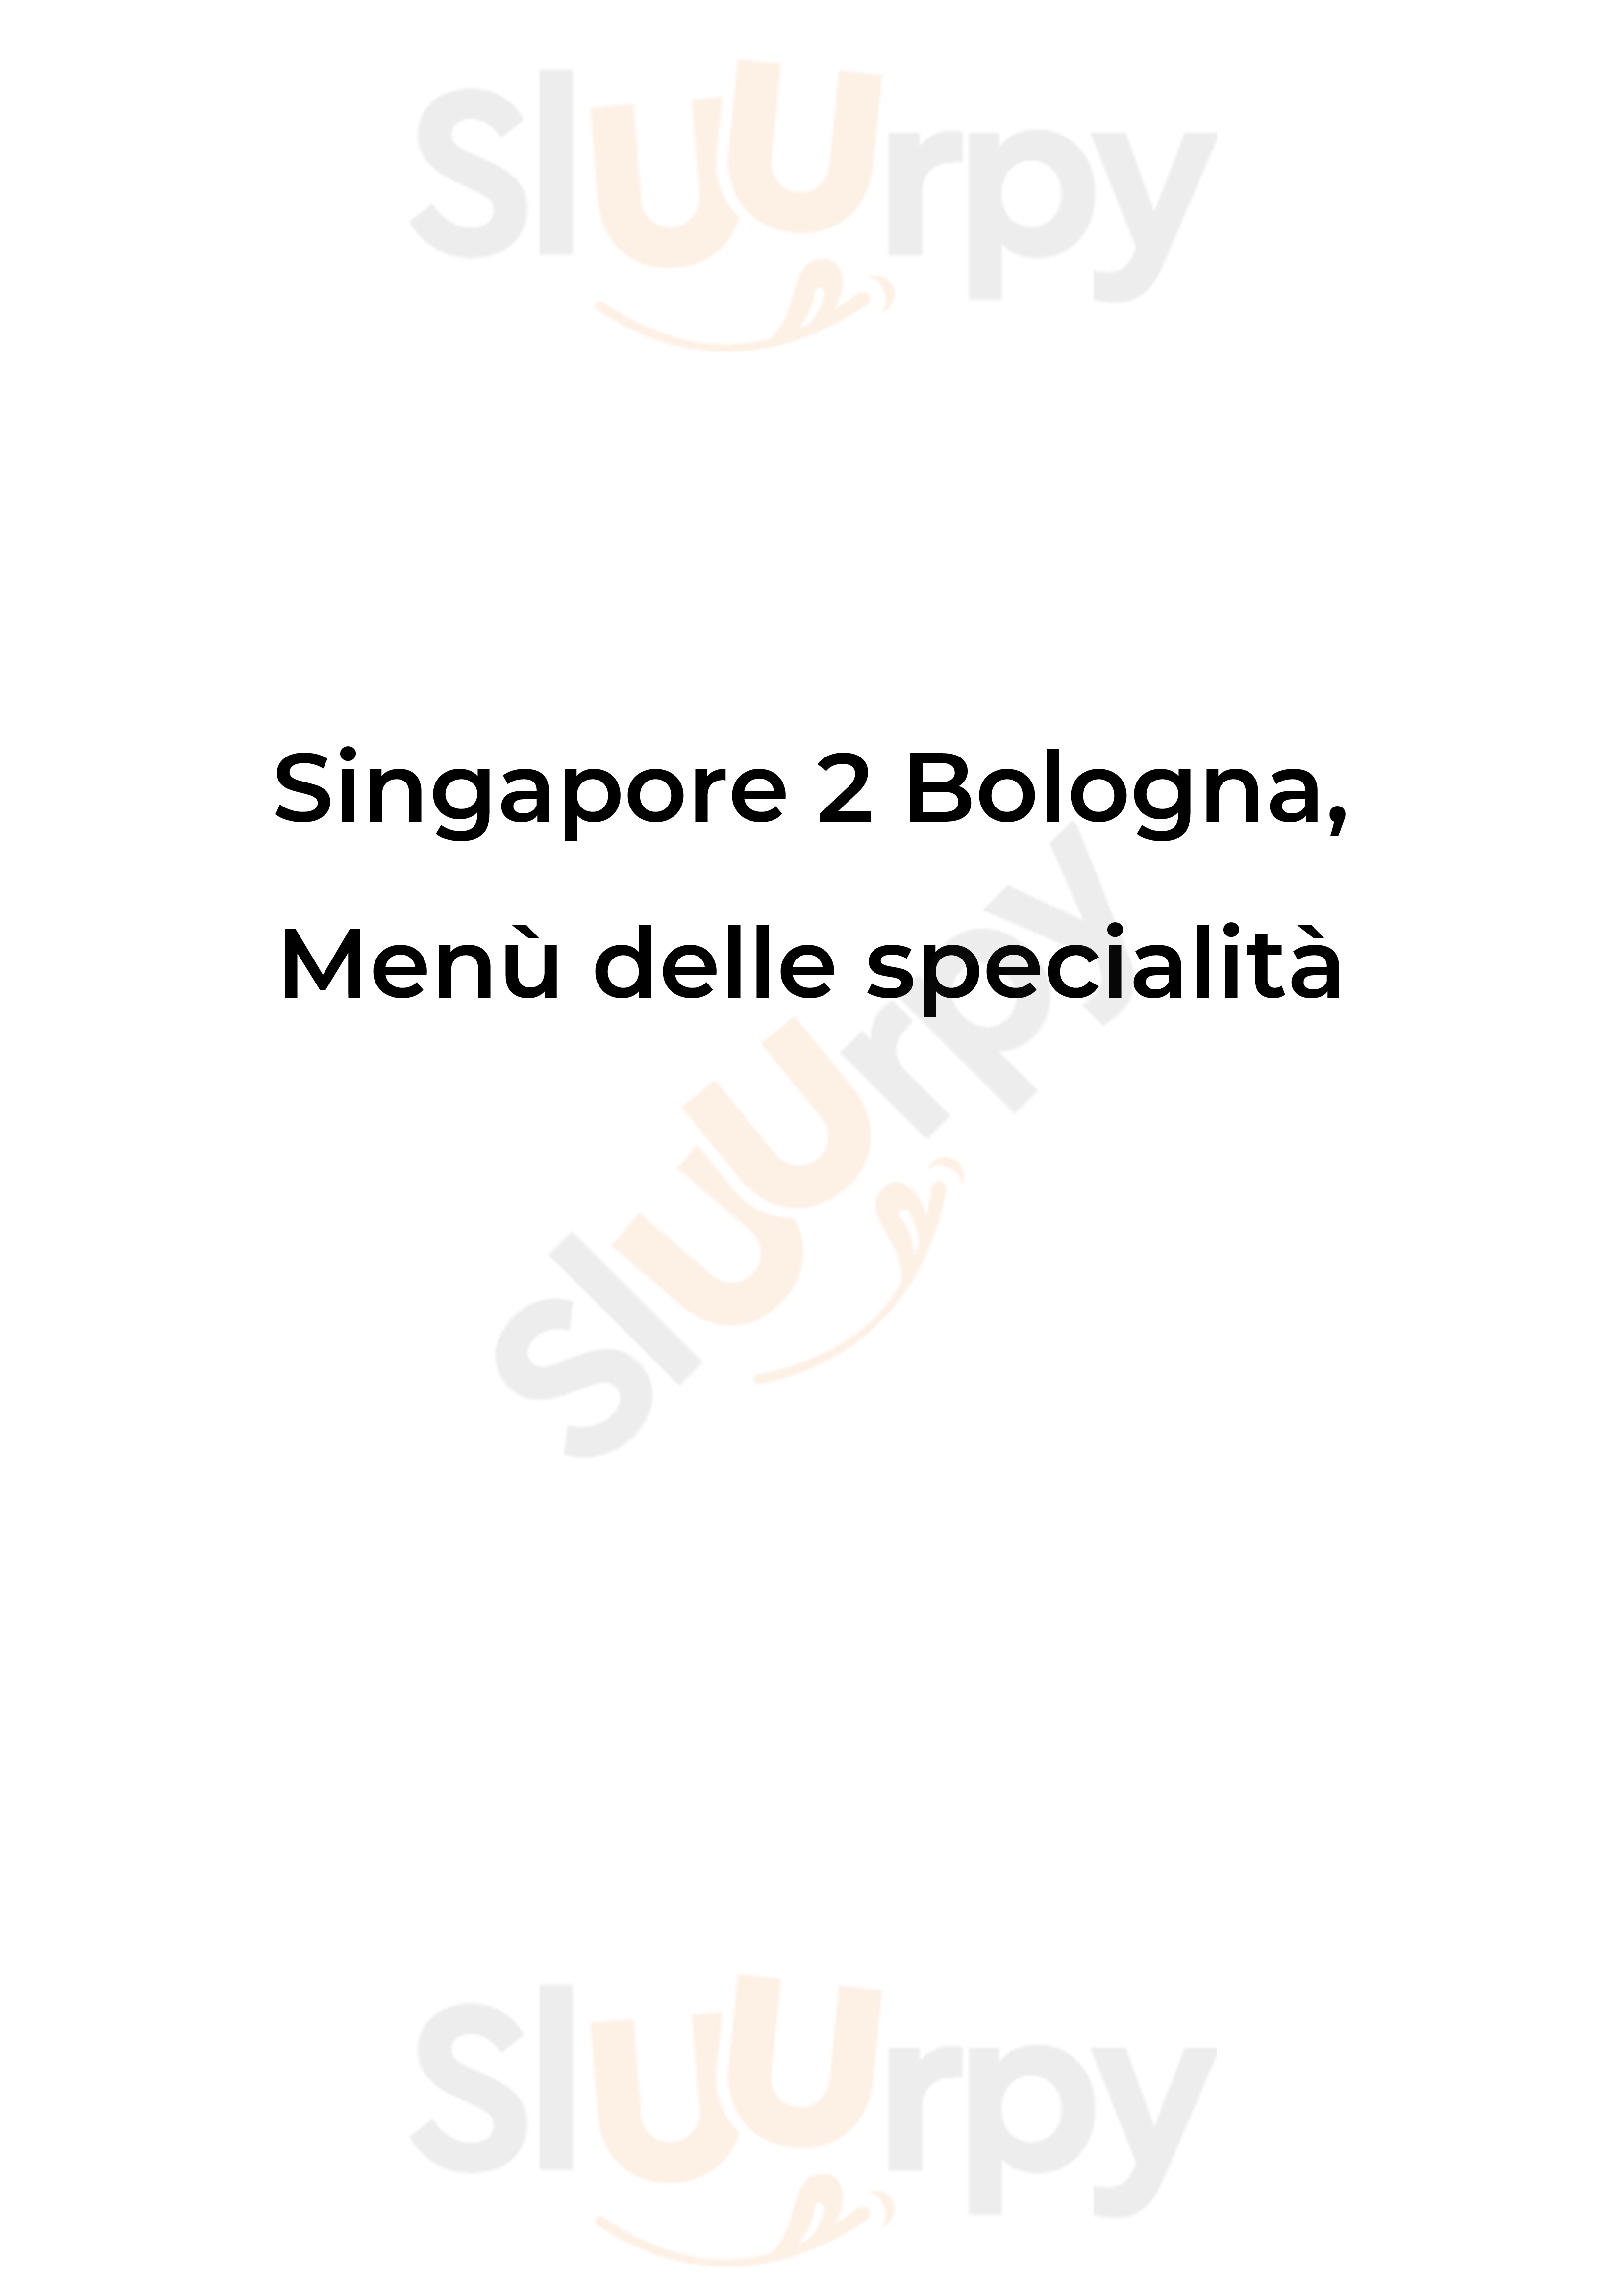 Singapore 2 Bologna menù 1 pagina